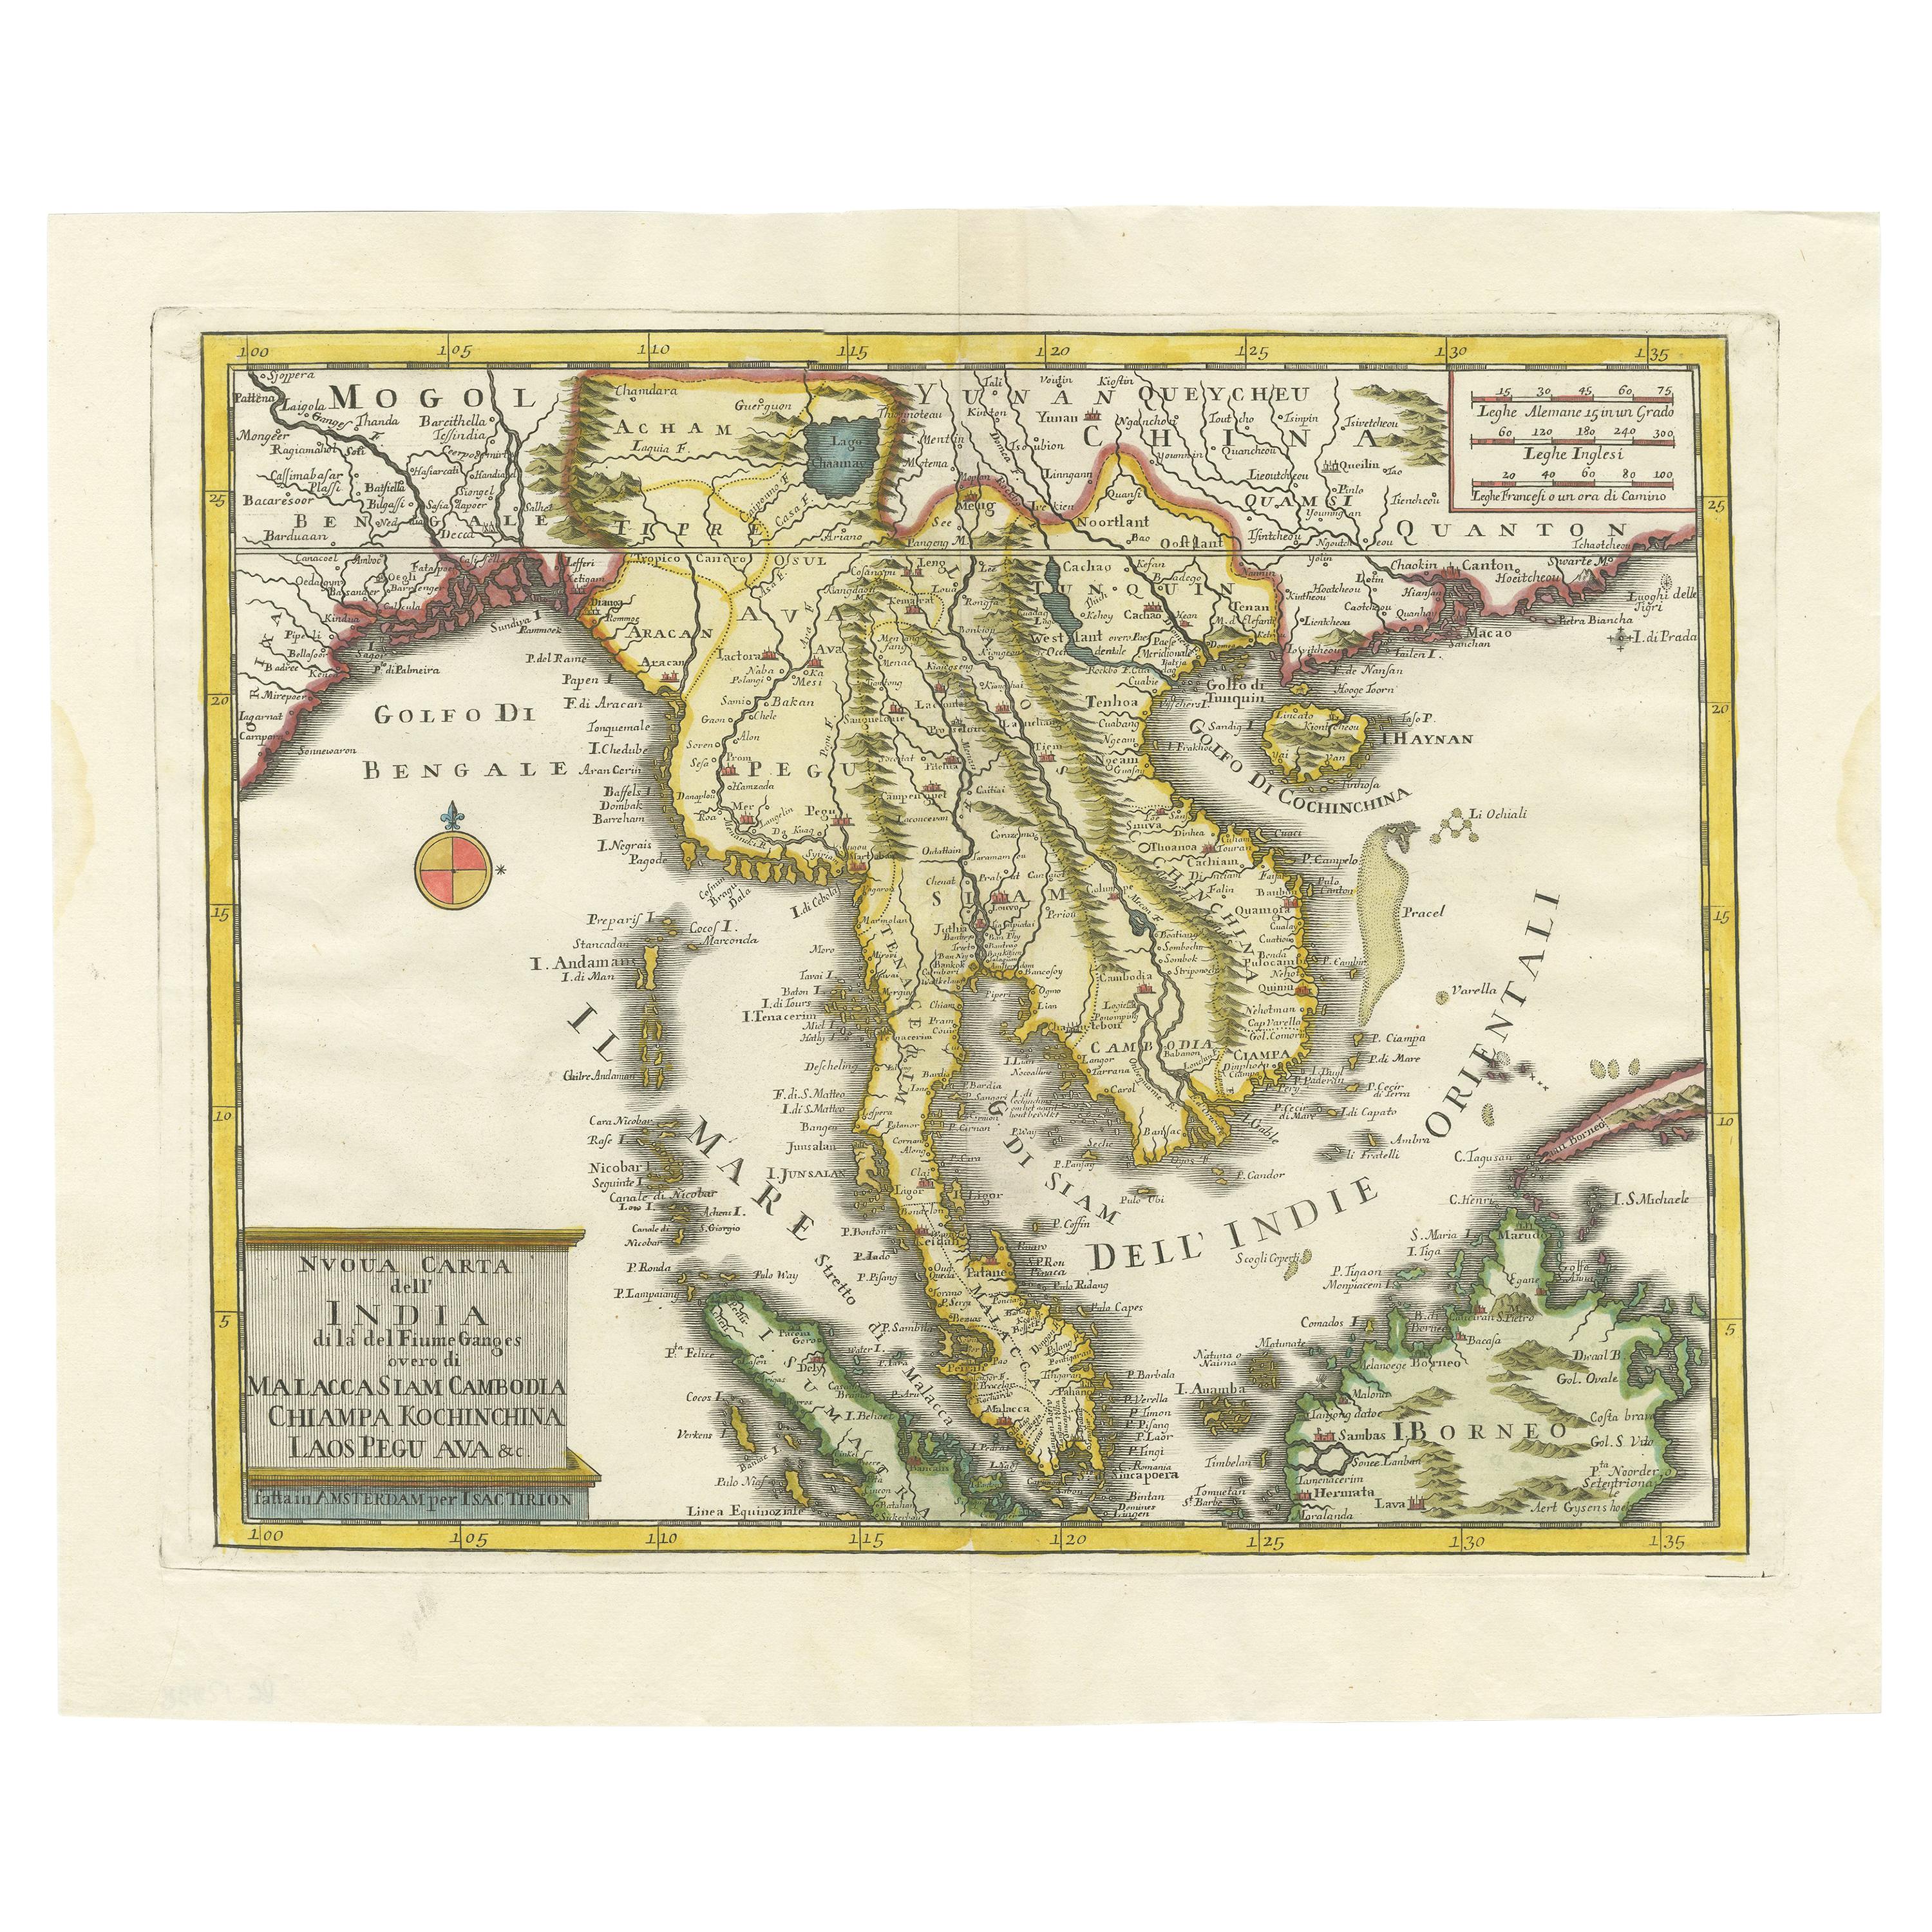 Carte ancienne de la région c. 1760 c. centrée sur la péninsule de Malay par Tirion